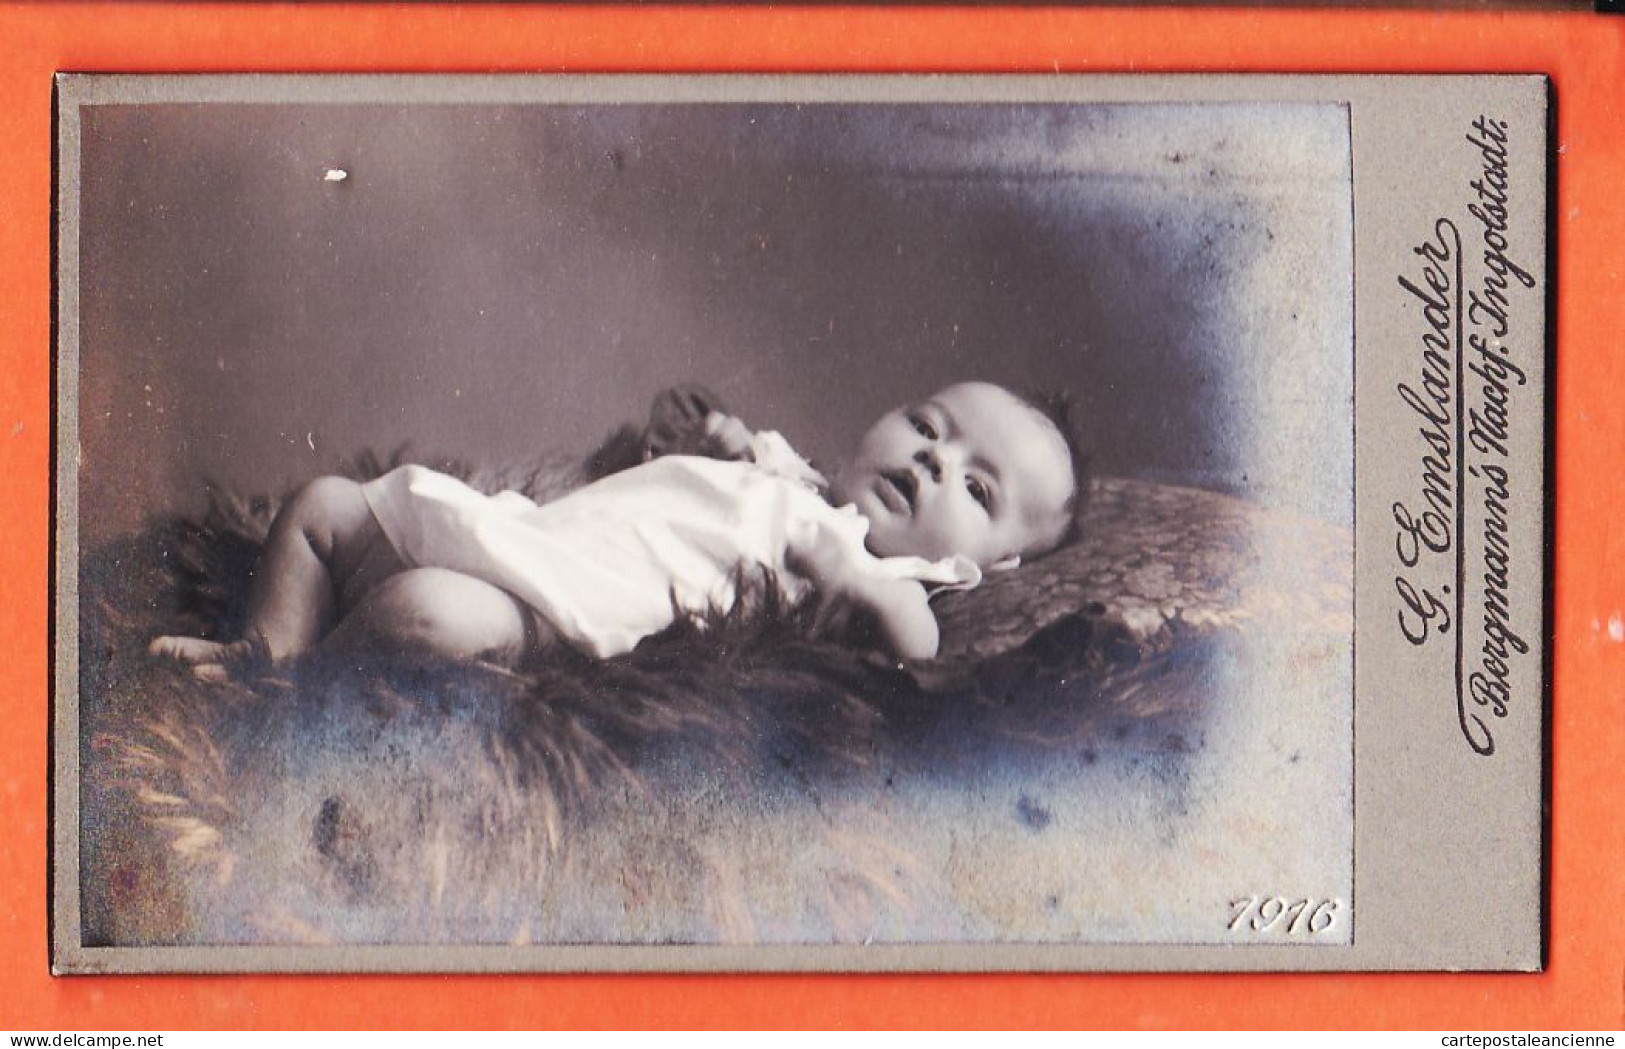 01119 / ⭐ Photo CDV INGOLSTADT Bayern ◉ Bébé Nacktes Baby Das Auf Einem Fell Liegt 1916 ◉ BERGMANN Nachf Georg EMSLANDER - Anonyme Personen